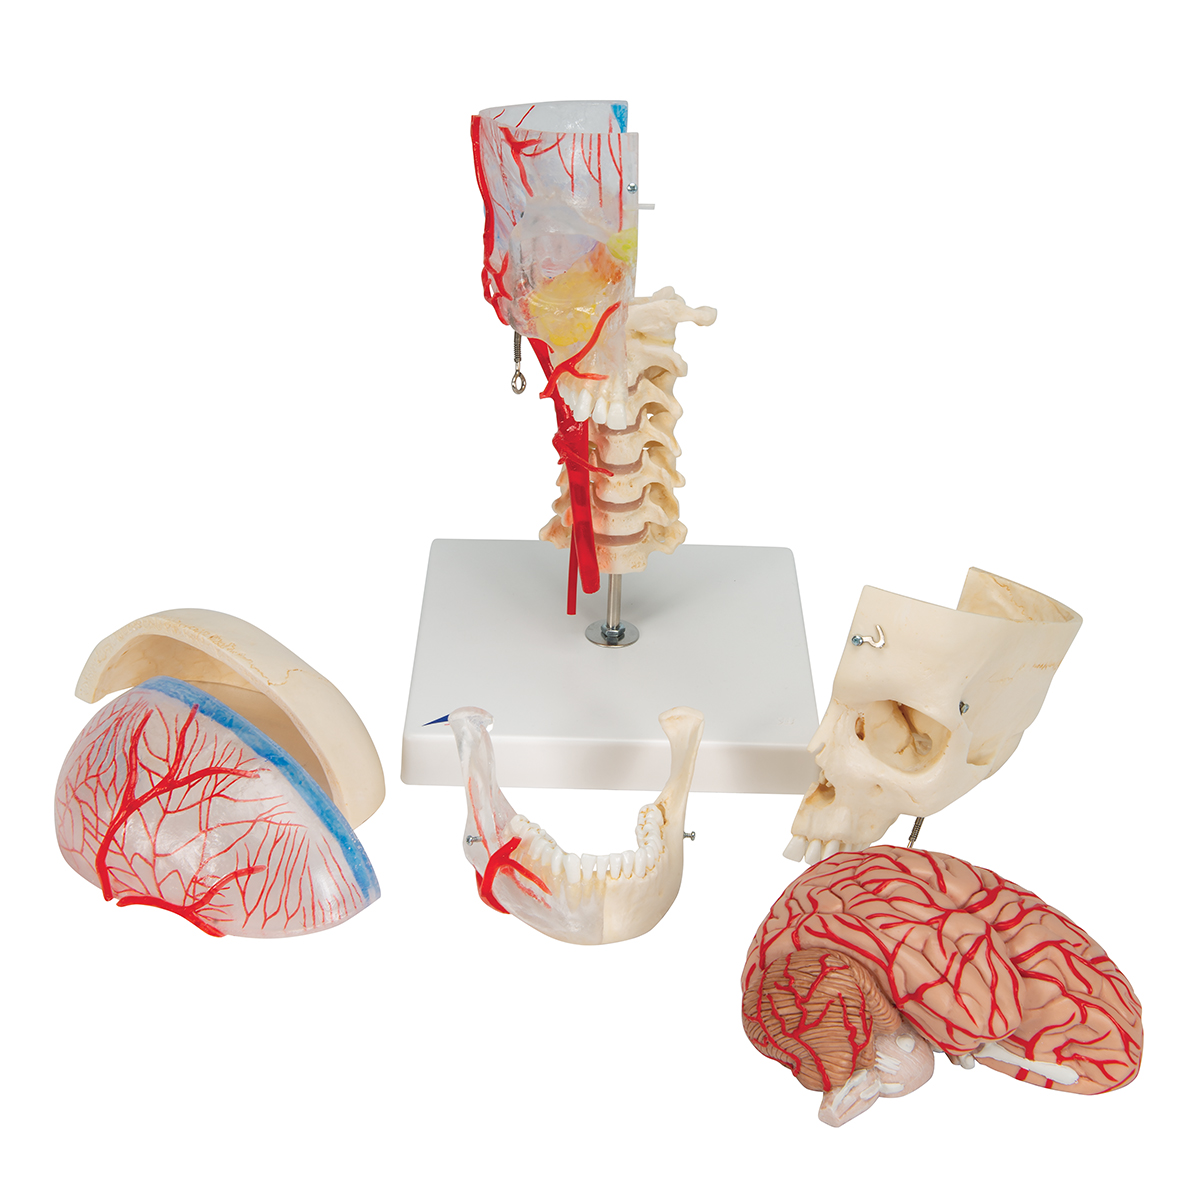 Crâne didactique sur colonne vertébrale, en 4 parties - 3B Smart Anatomy -  1020161 - A20/2 - Modèles de moulage de crânes humains - 3B Scientific